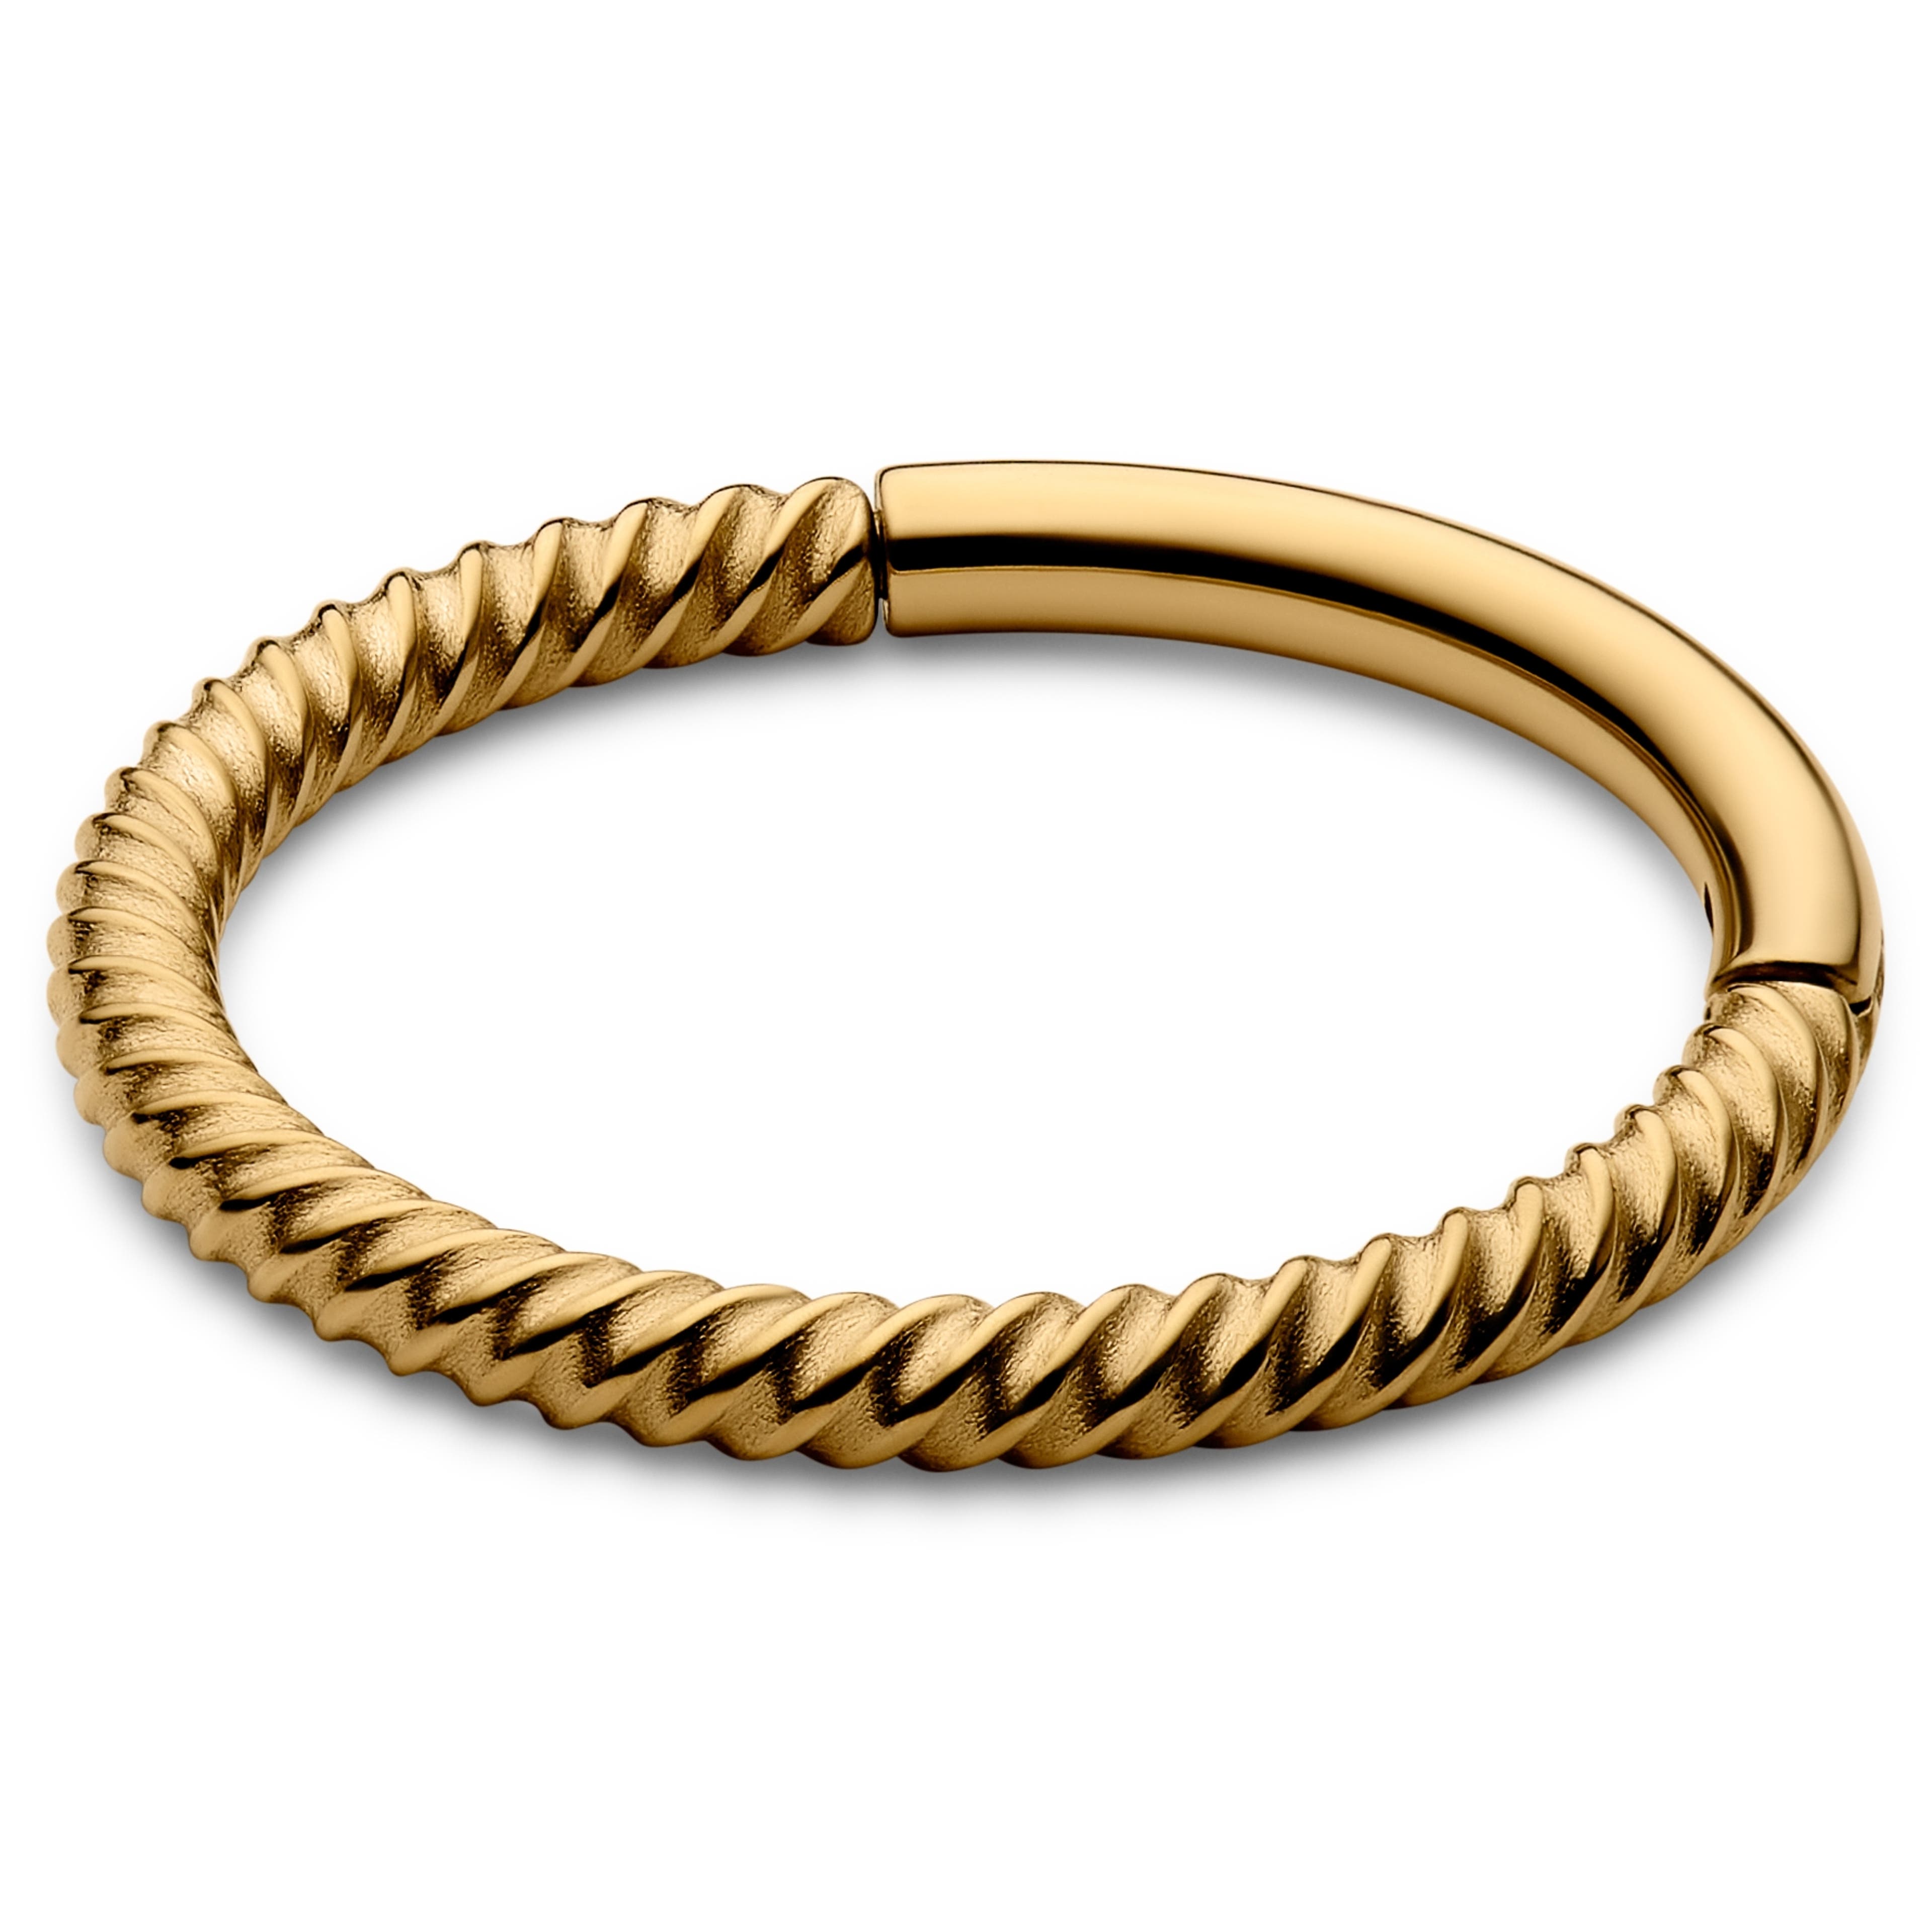 Arany tónusú sebészeti acél kötél dizájnú piercing gyűrű - 10 mm